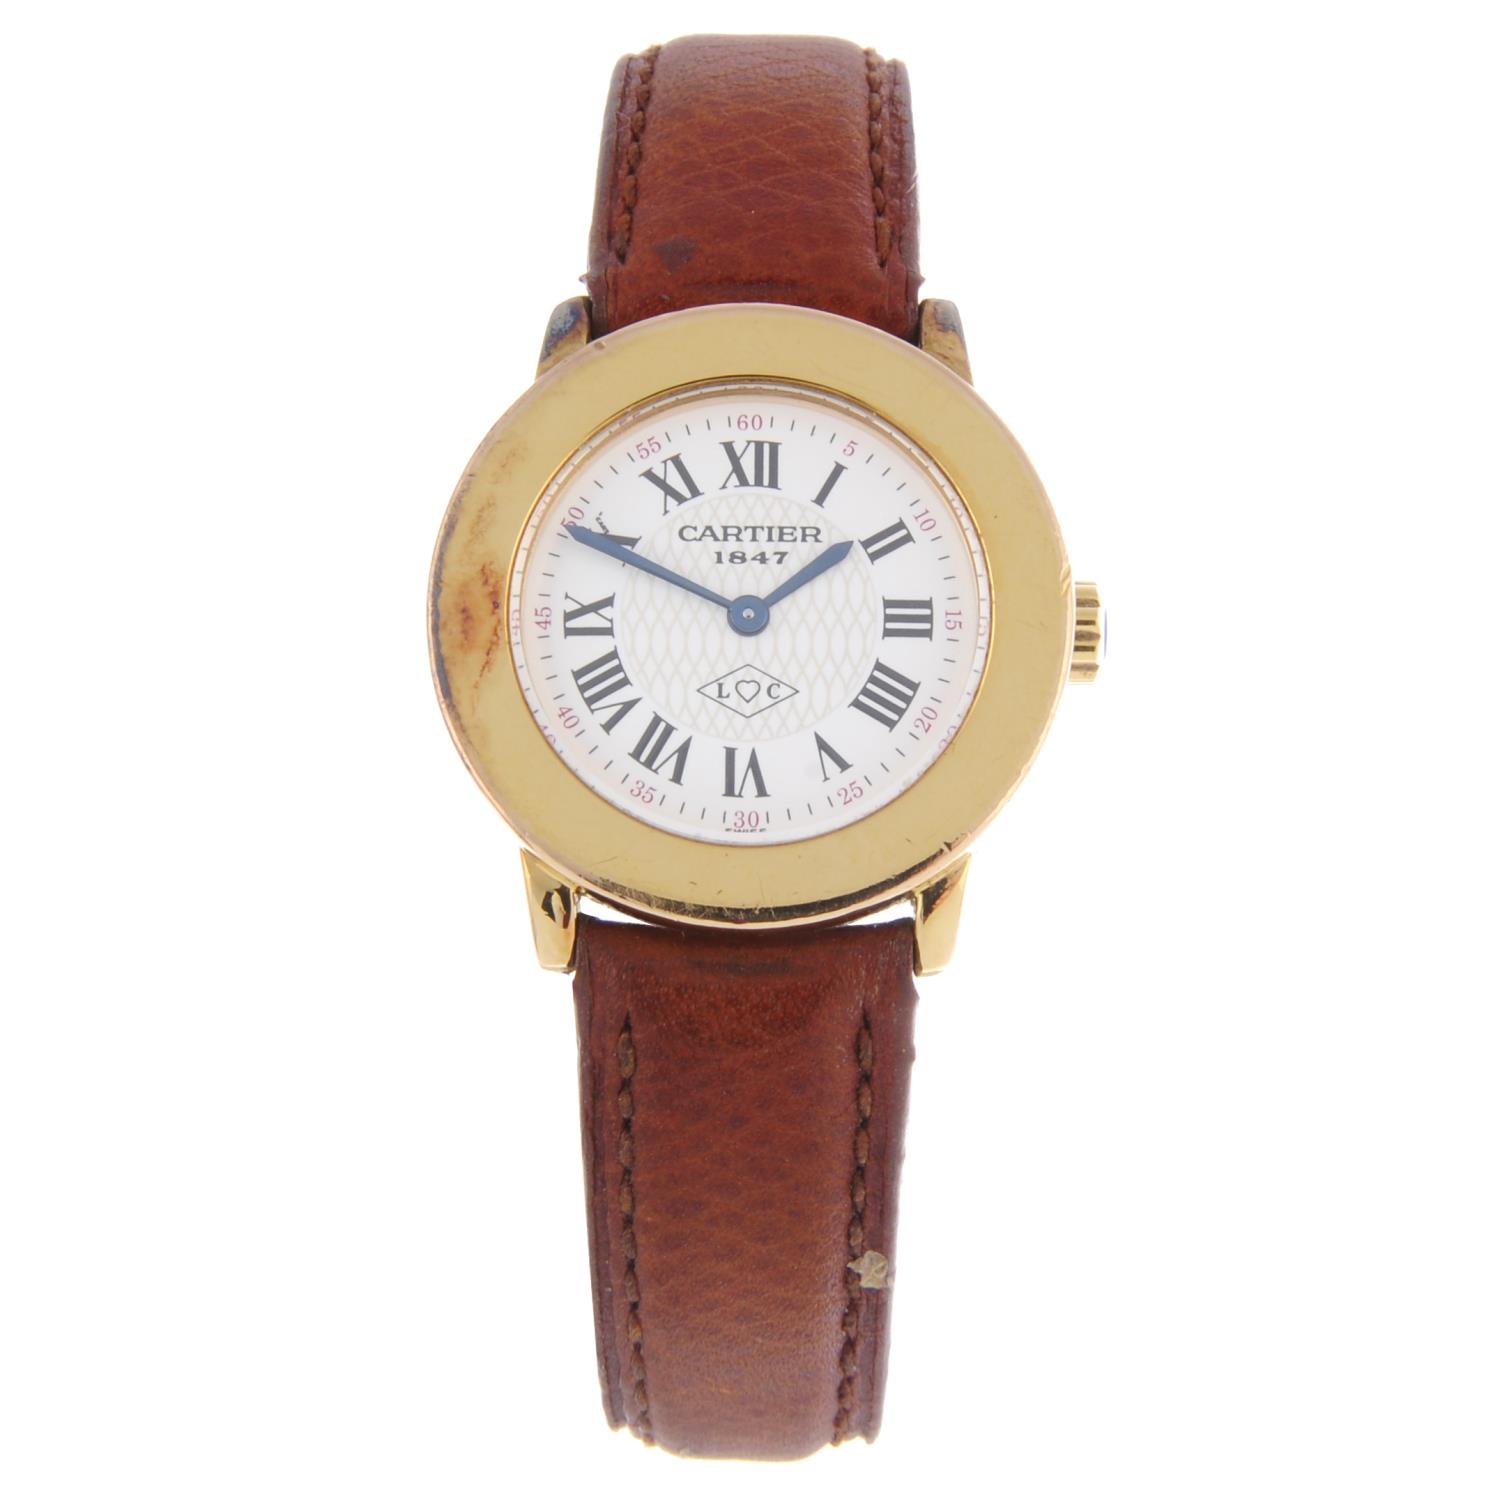 CARTIER - a lady's Must De Cartier Ronde wrist watch.